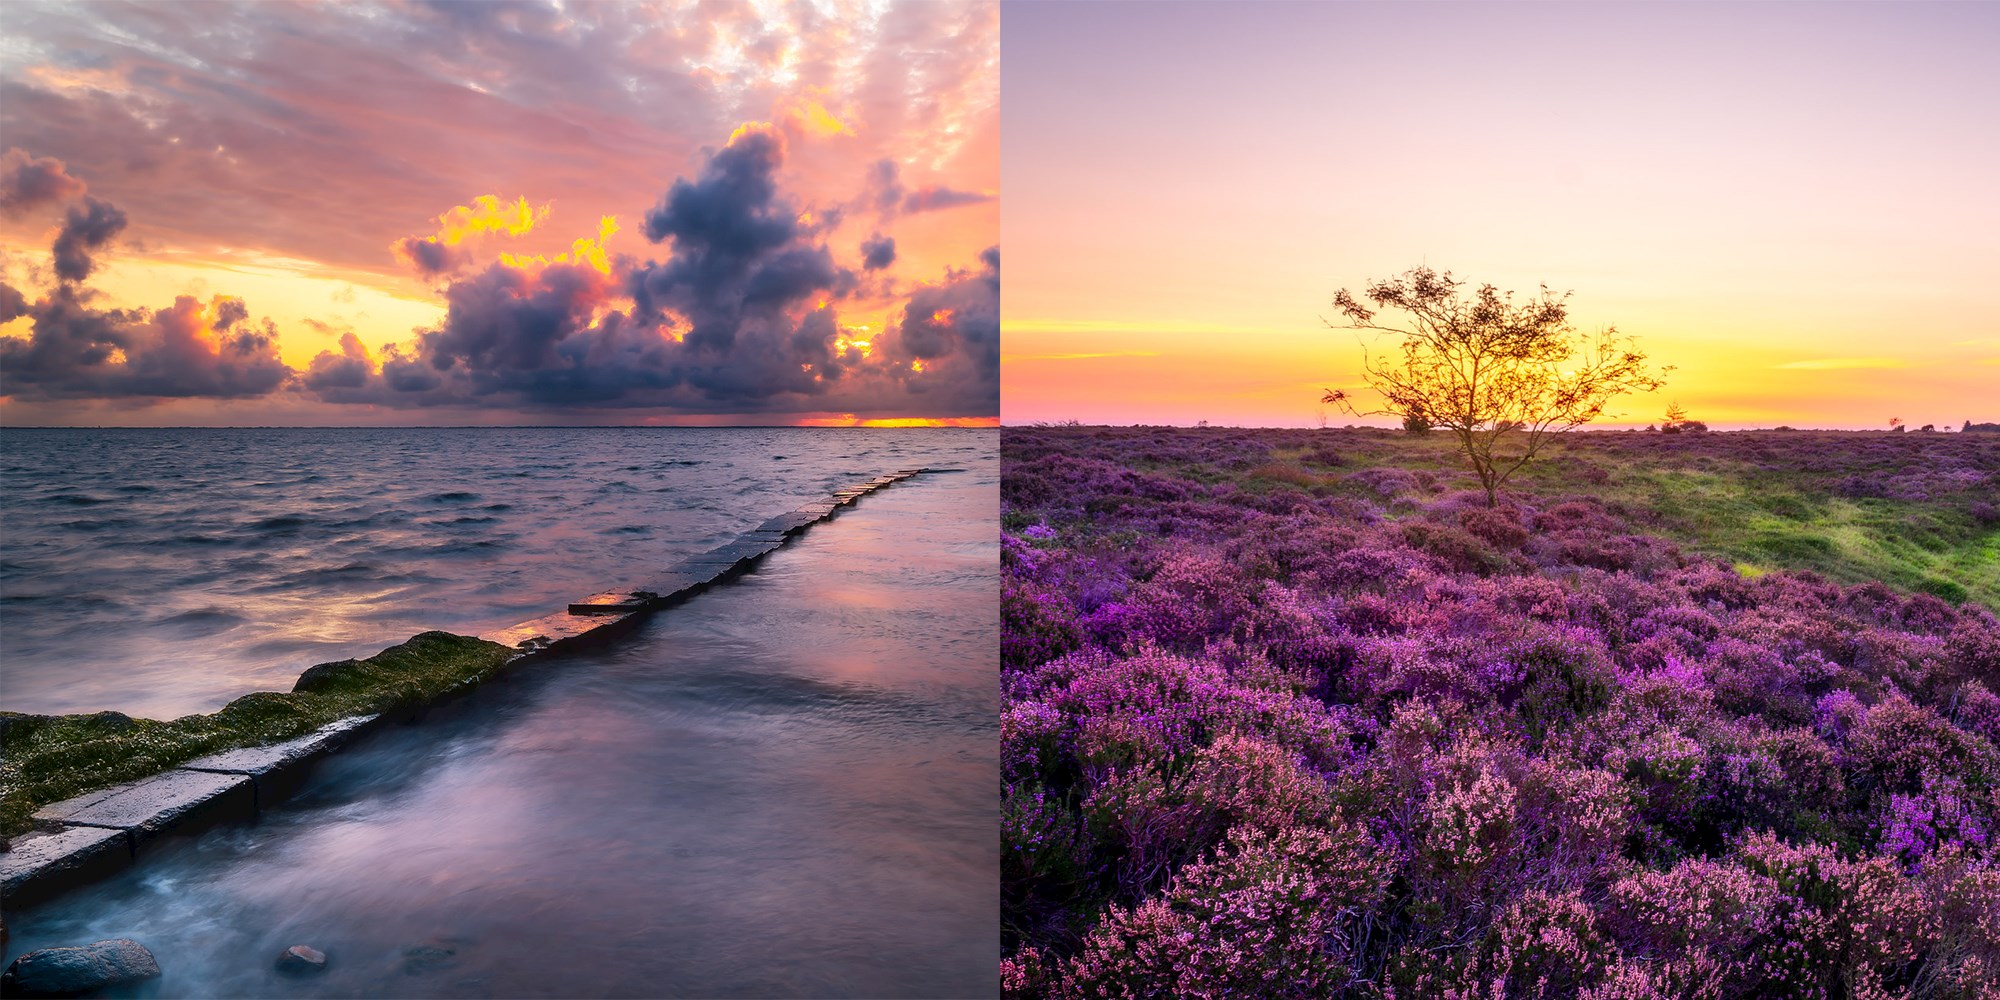 Lær mere om landskabs- og naturfotografering med Michel hos FOF Sydjylland